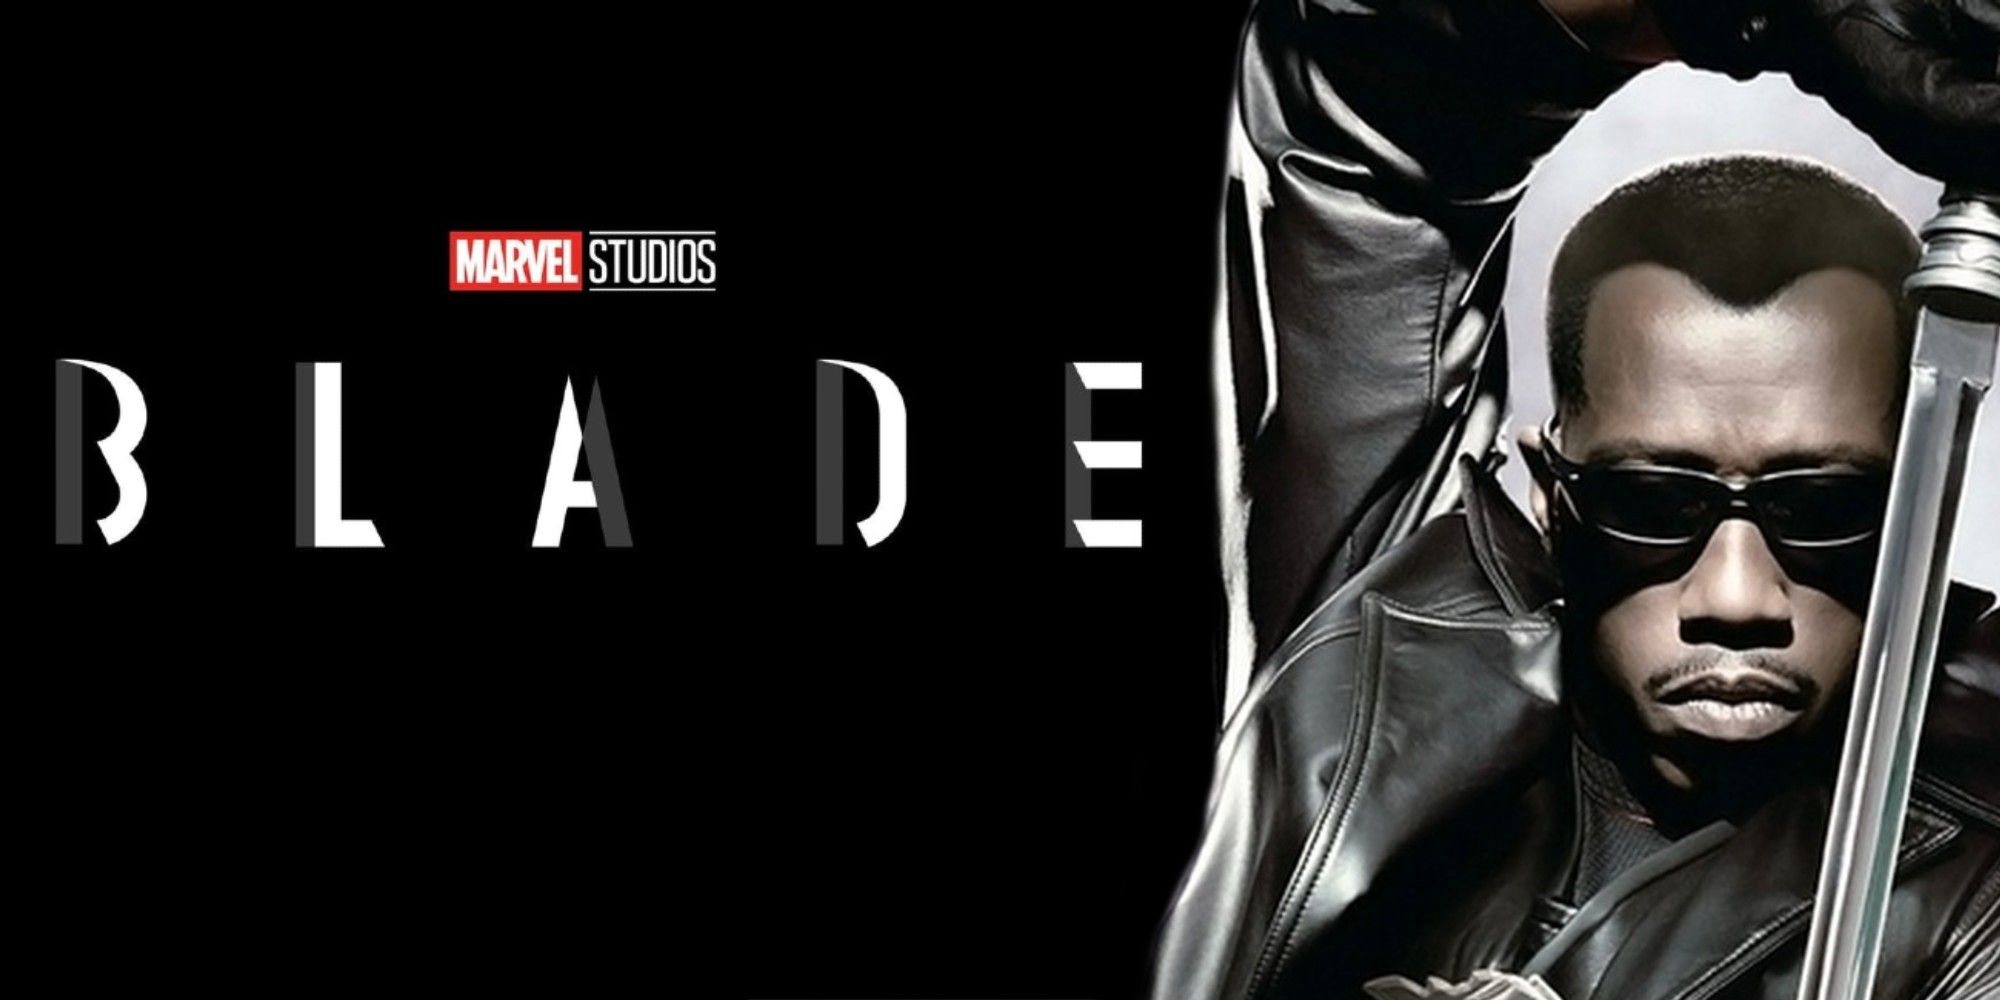 Wesley Snipes in Blade plus MCU Blade logo